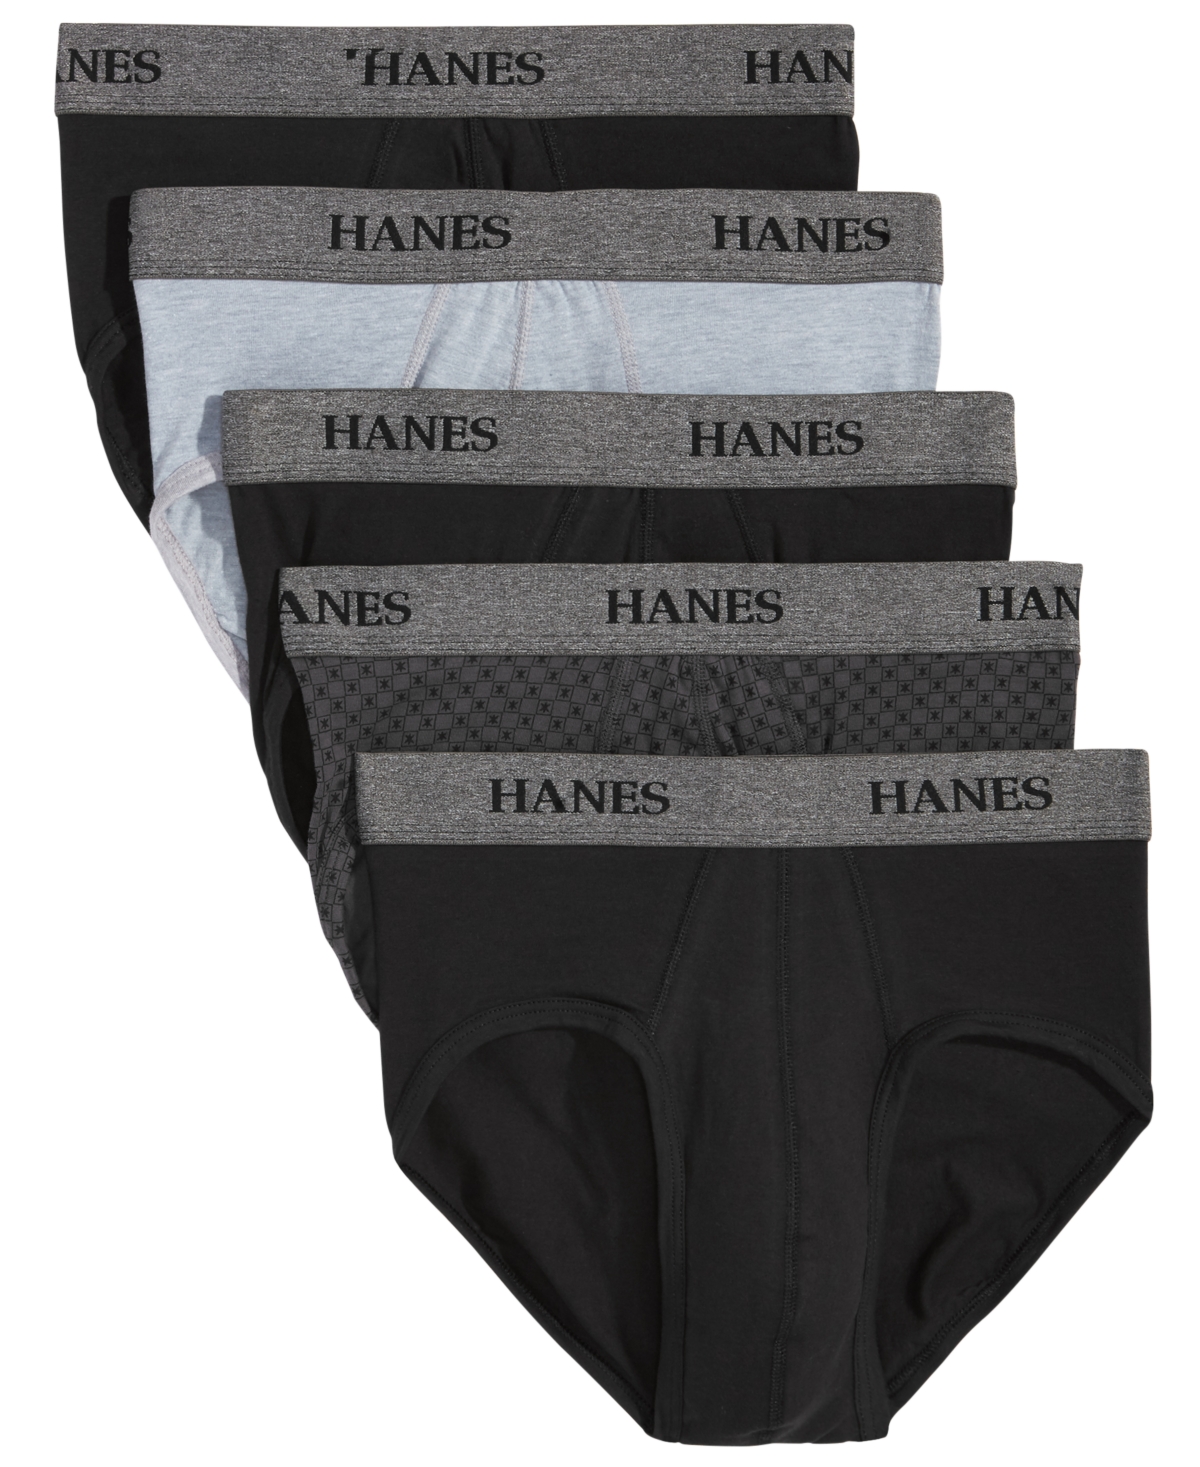 Hanes Platinum Cotton Hipster Underwear 4 Pack 41C4 - Macy's